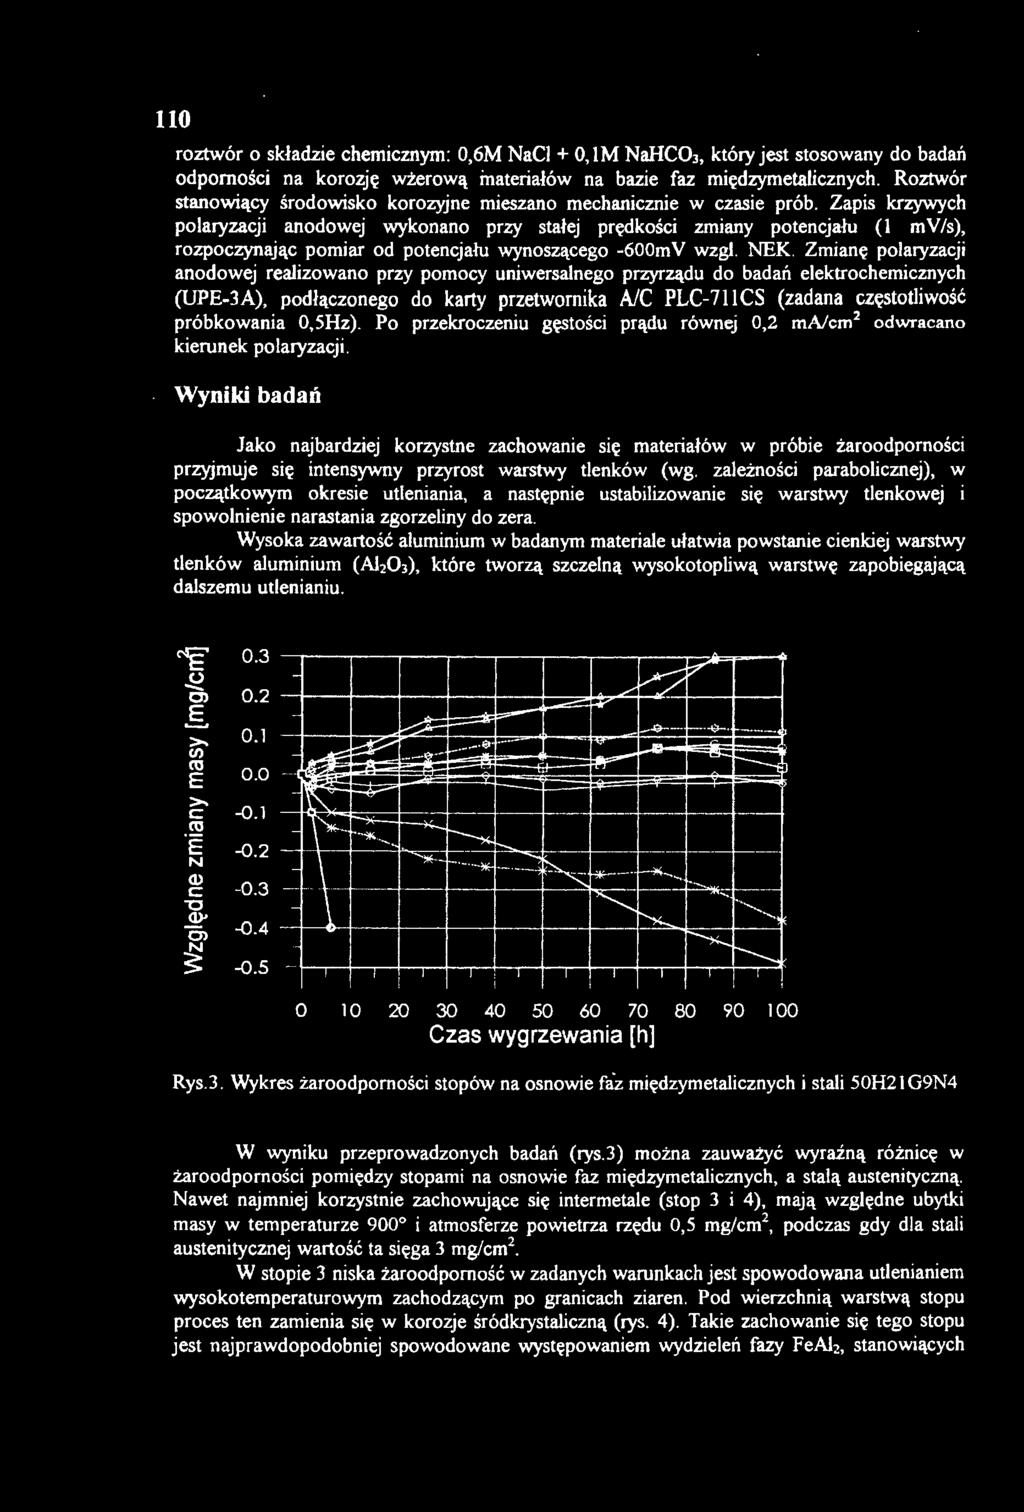 Zapis krzywych polaryzacji anodowej wykonano przy stałej prędkości zmiany potencjału (I mv/s), rozpoczynając pomiar od potencj ału wynoszącego -600mV wzgl. NEK.